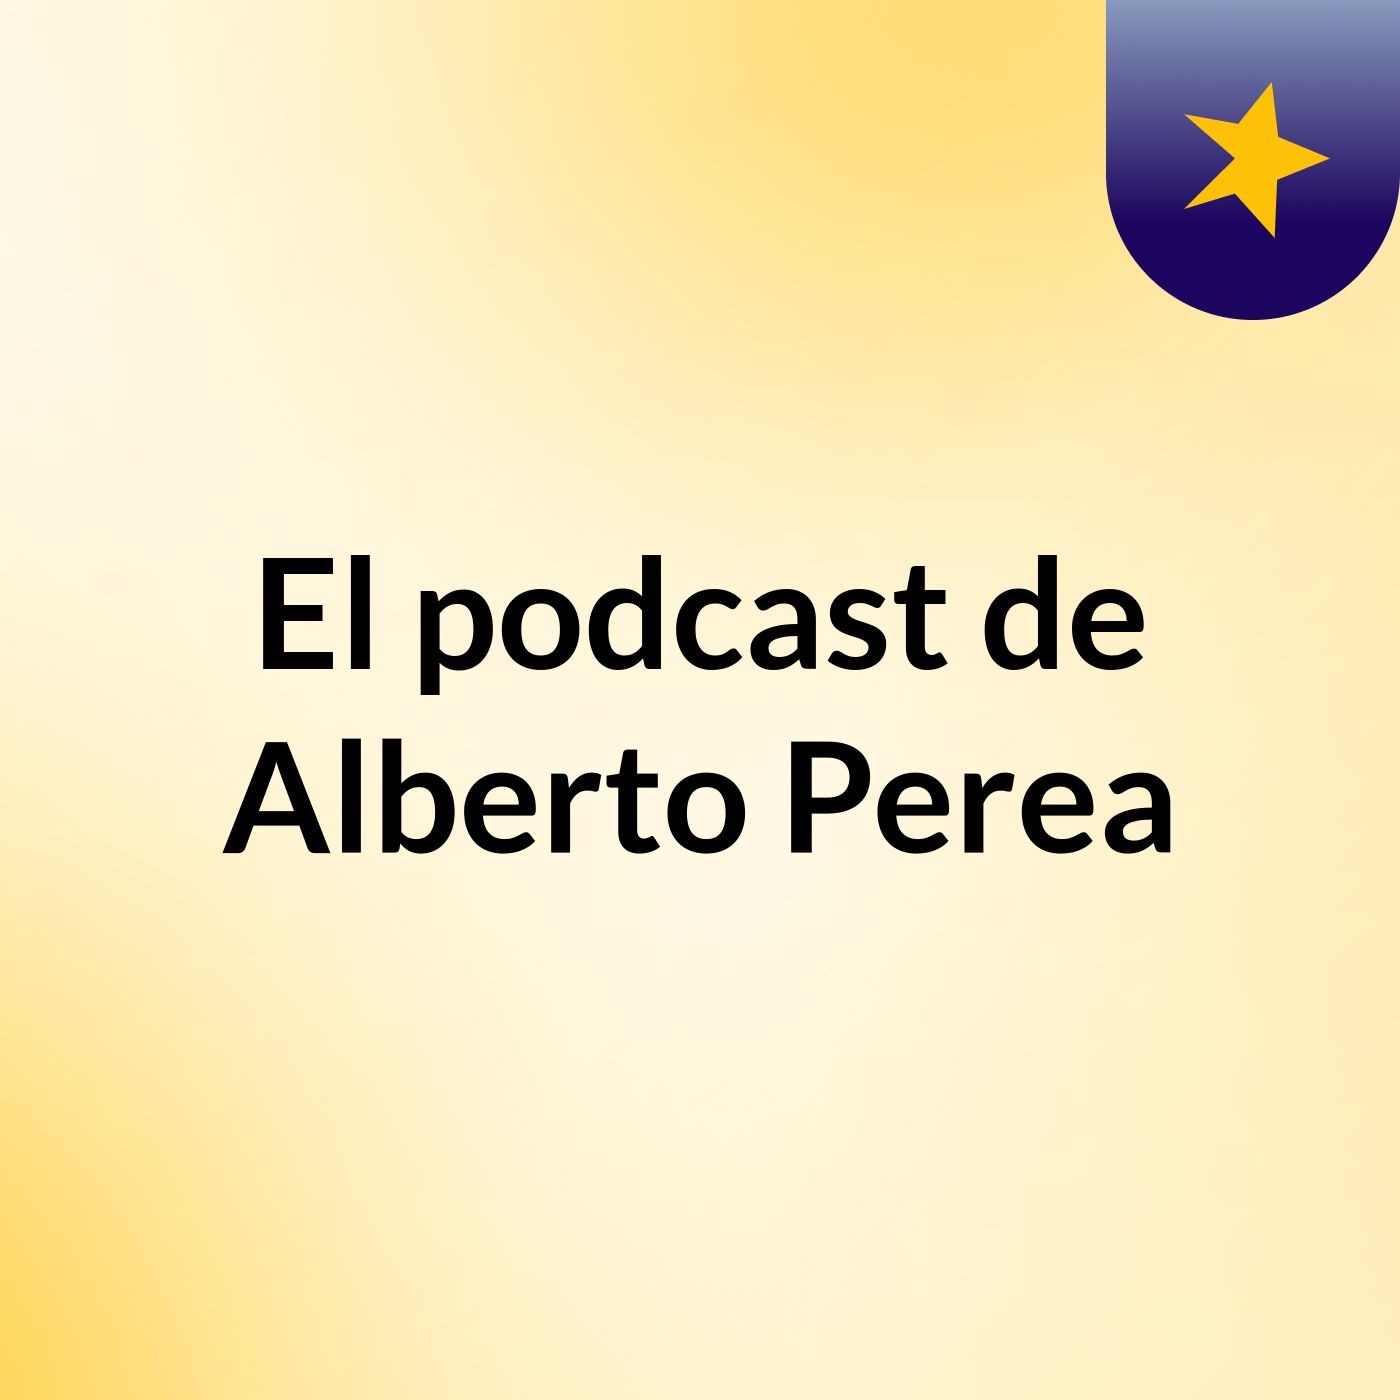 El podcast de Alberto Perea